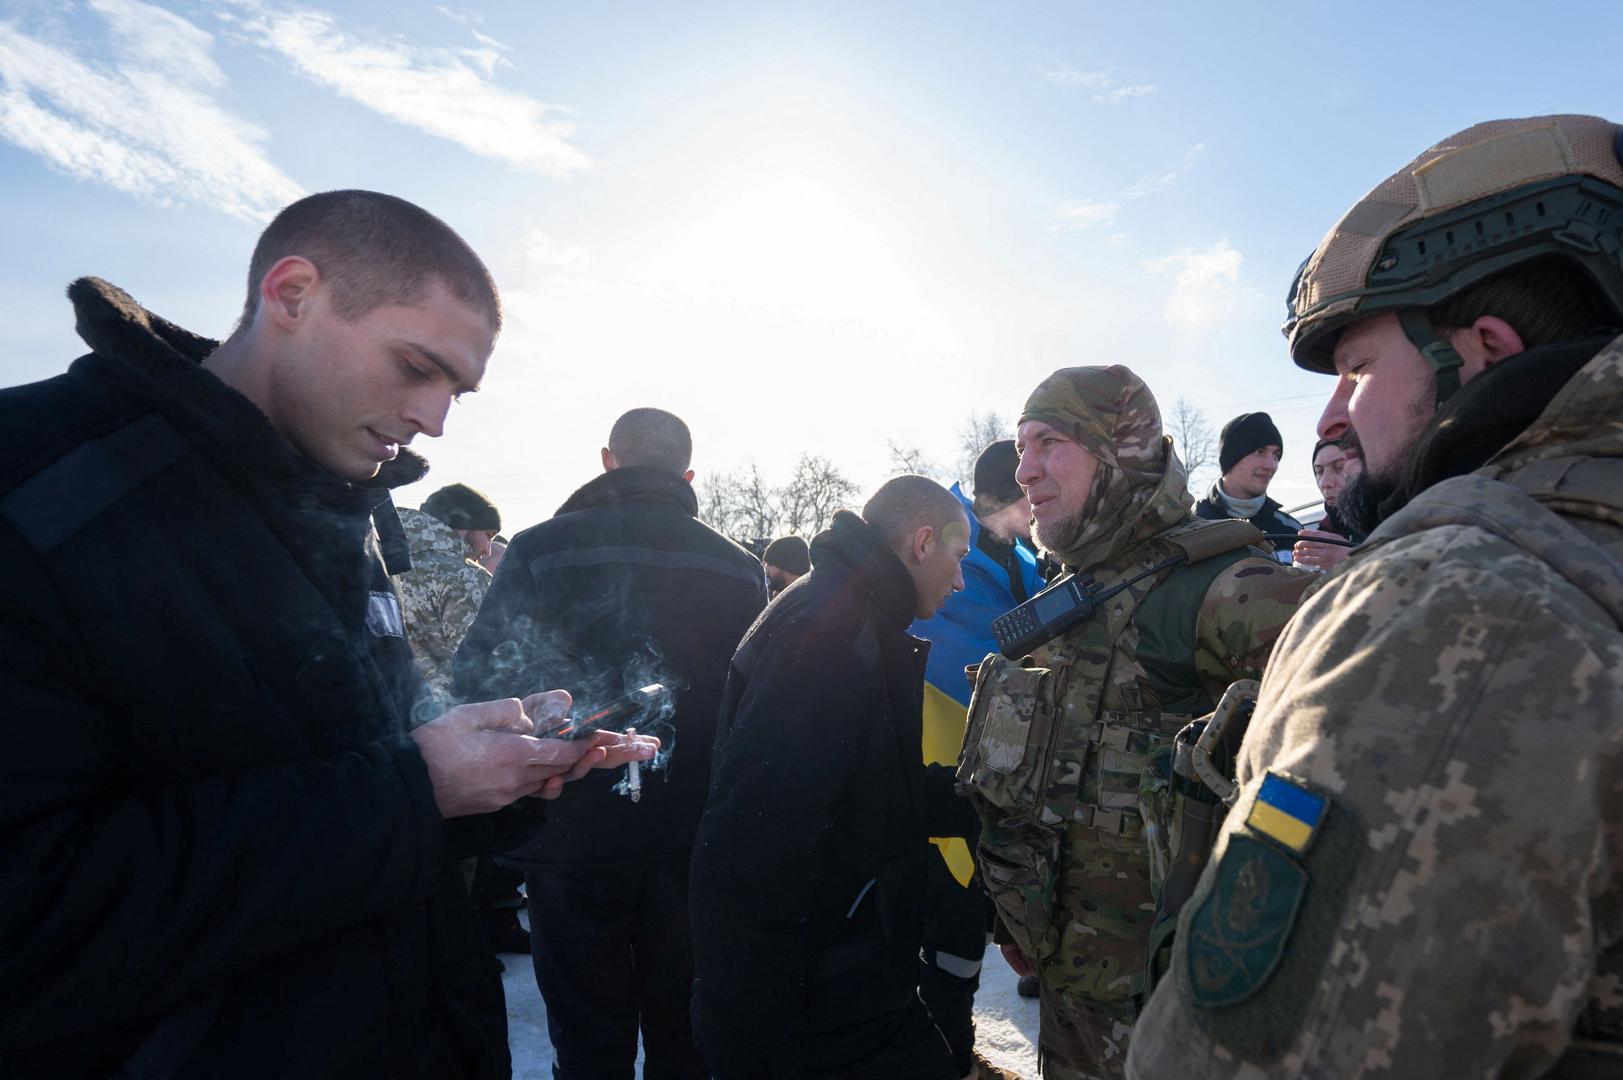 Rusko ministarstvo obrane priopćilo je u srijedu da je dovršilo dogovor o razmjeni s Ukrajinom prema kojem je svaka strana dobila natrag 195 vojnika. 